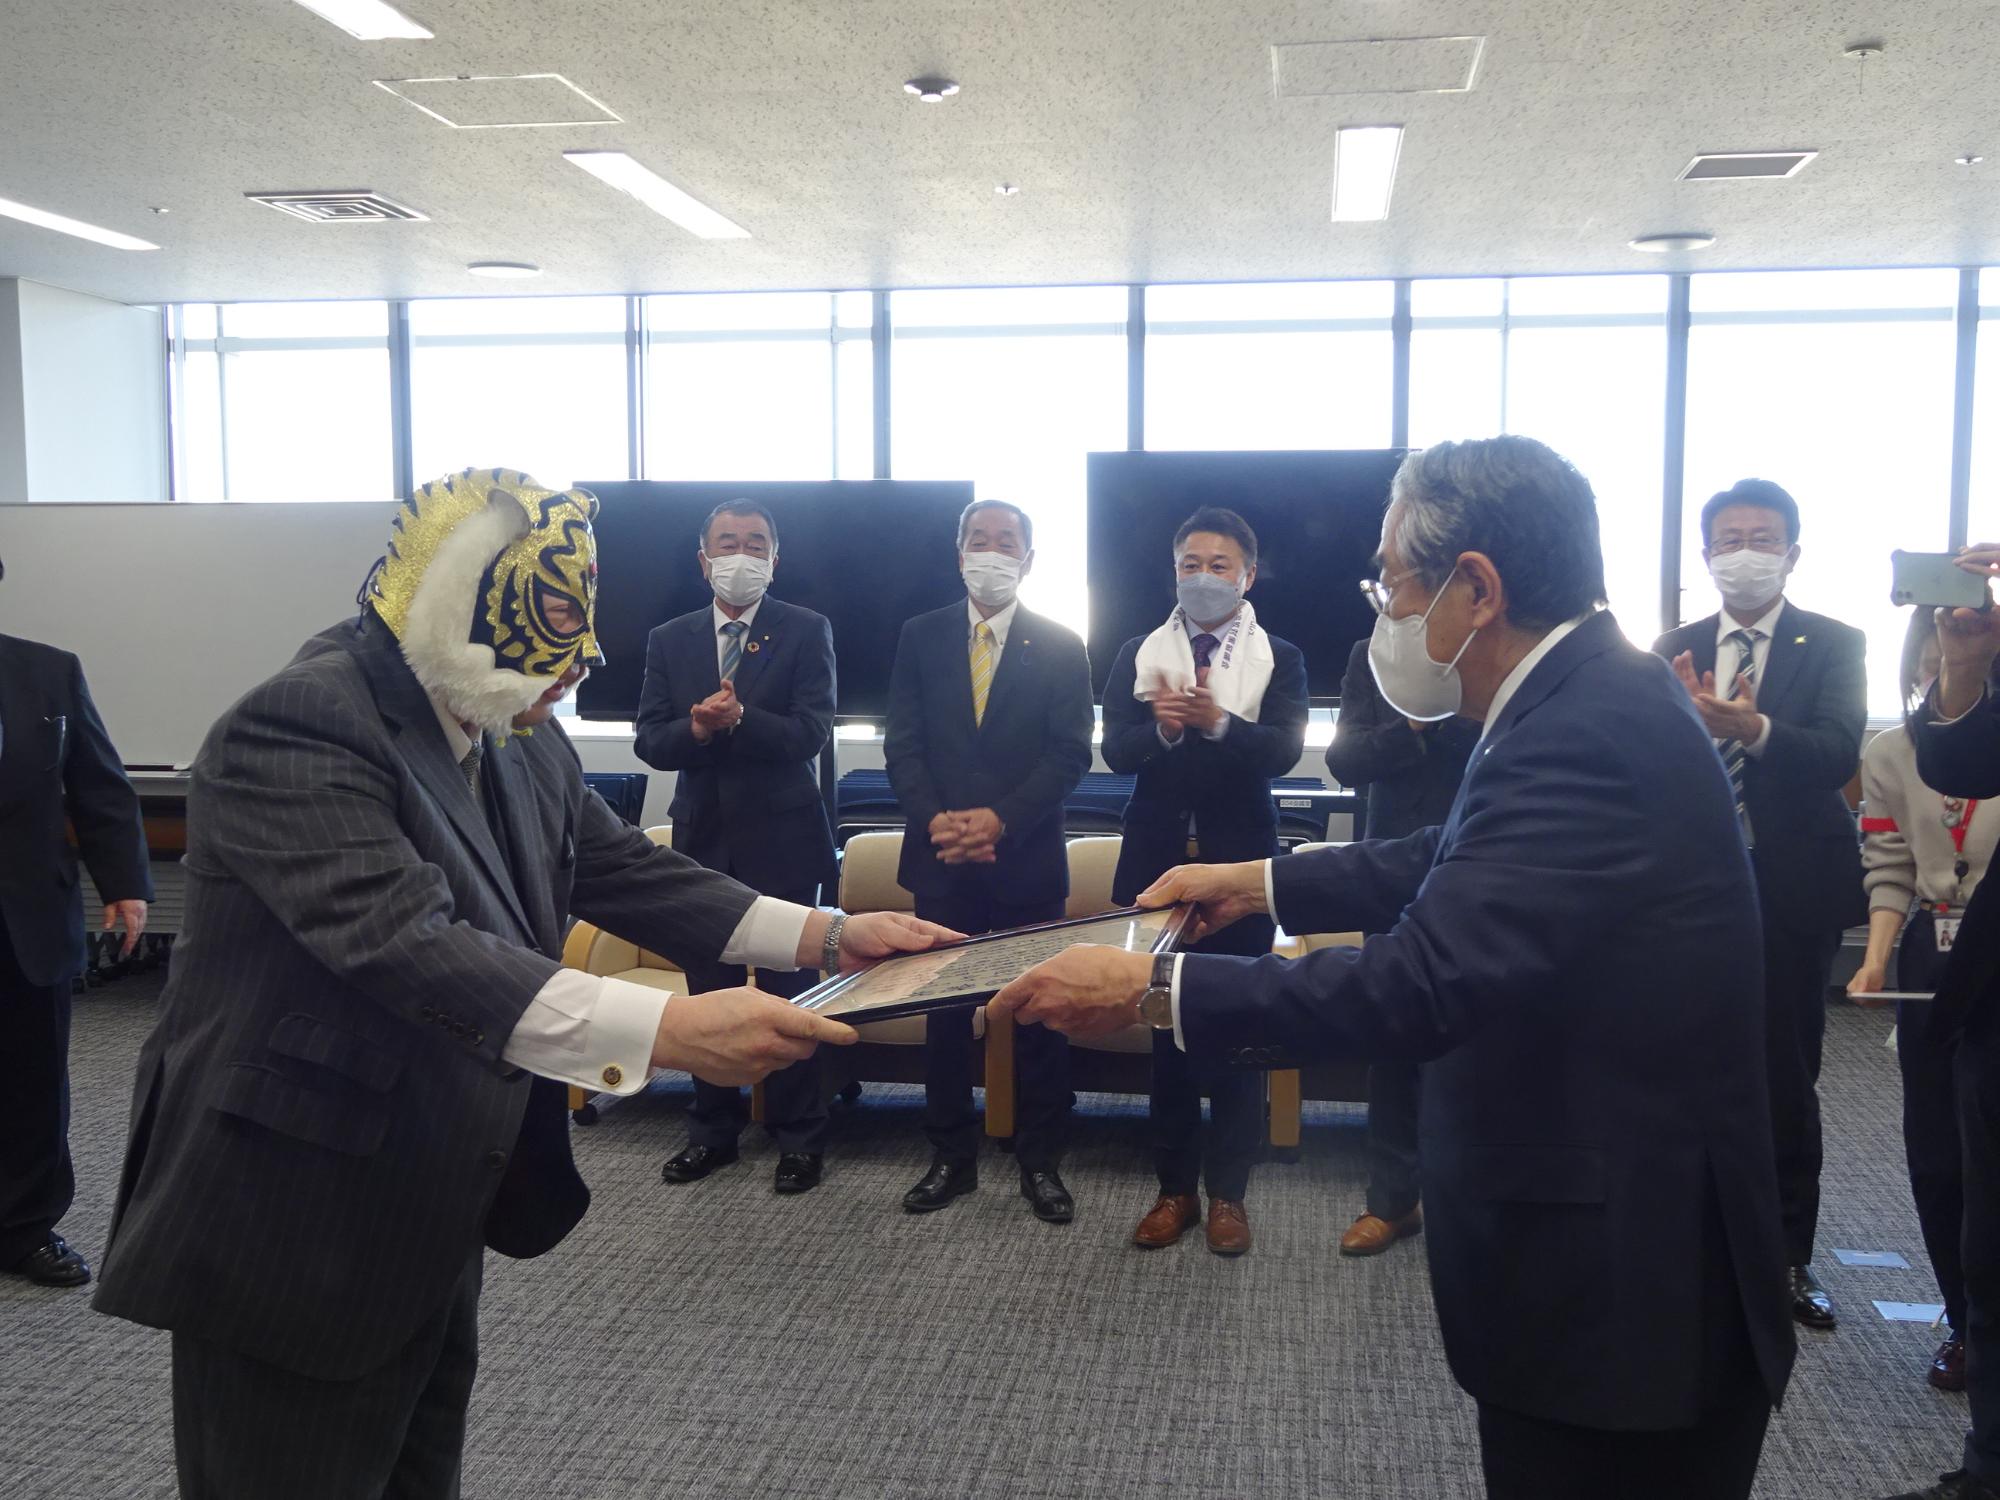 市長から感謝状を受け取っているタイガーマスクを被った佐山聡さんの写真